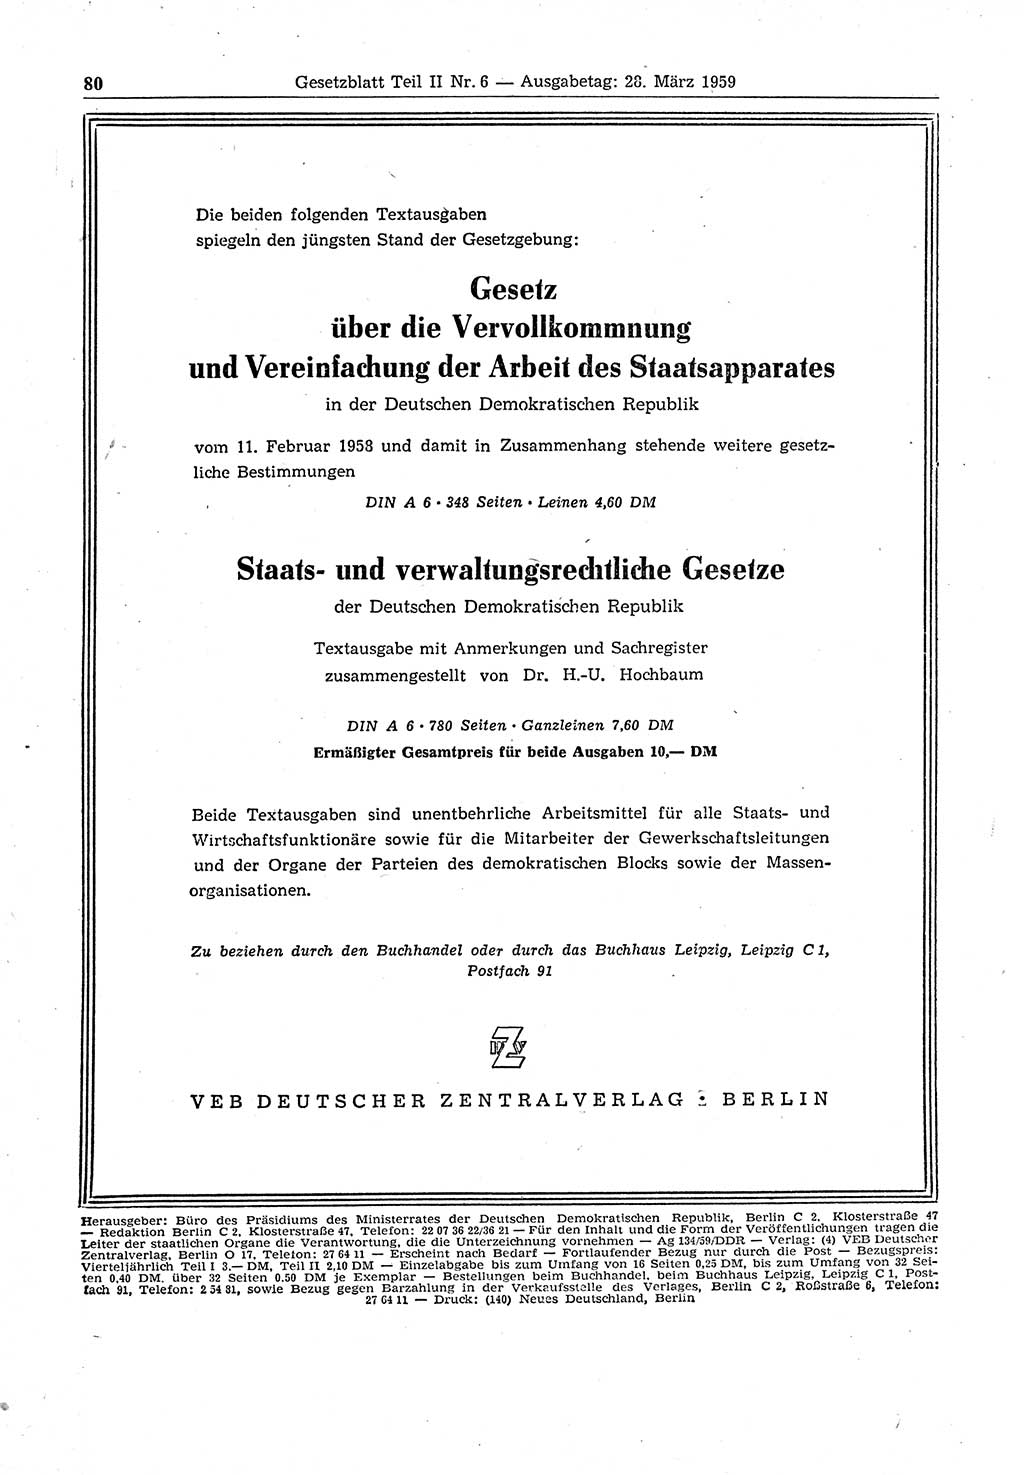 Gesetzblatt (GBl.) der Deutschen Demokratischen Republik (DDR) Teil ⅠⅠ 1959, Seite 80 (GBl. DDR ⅠⅠ 1959, S. 80)